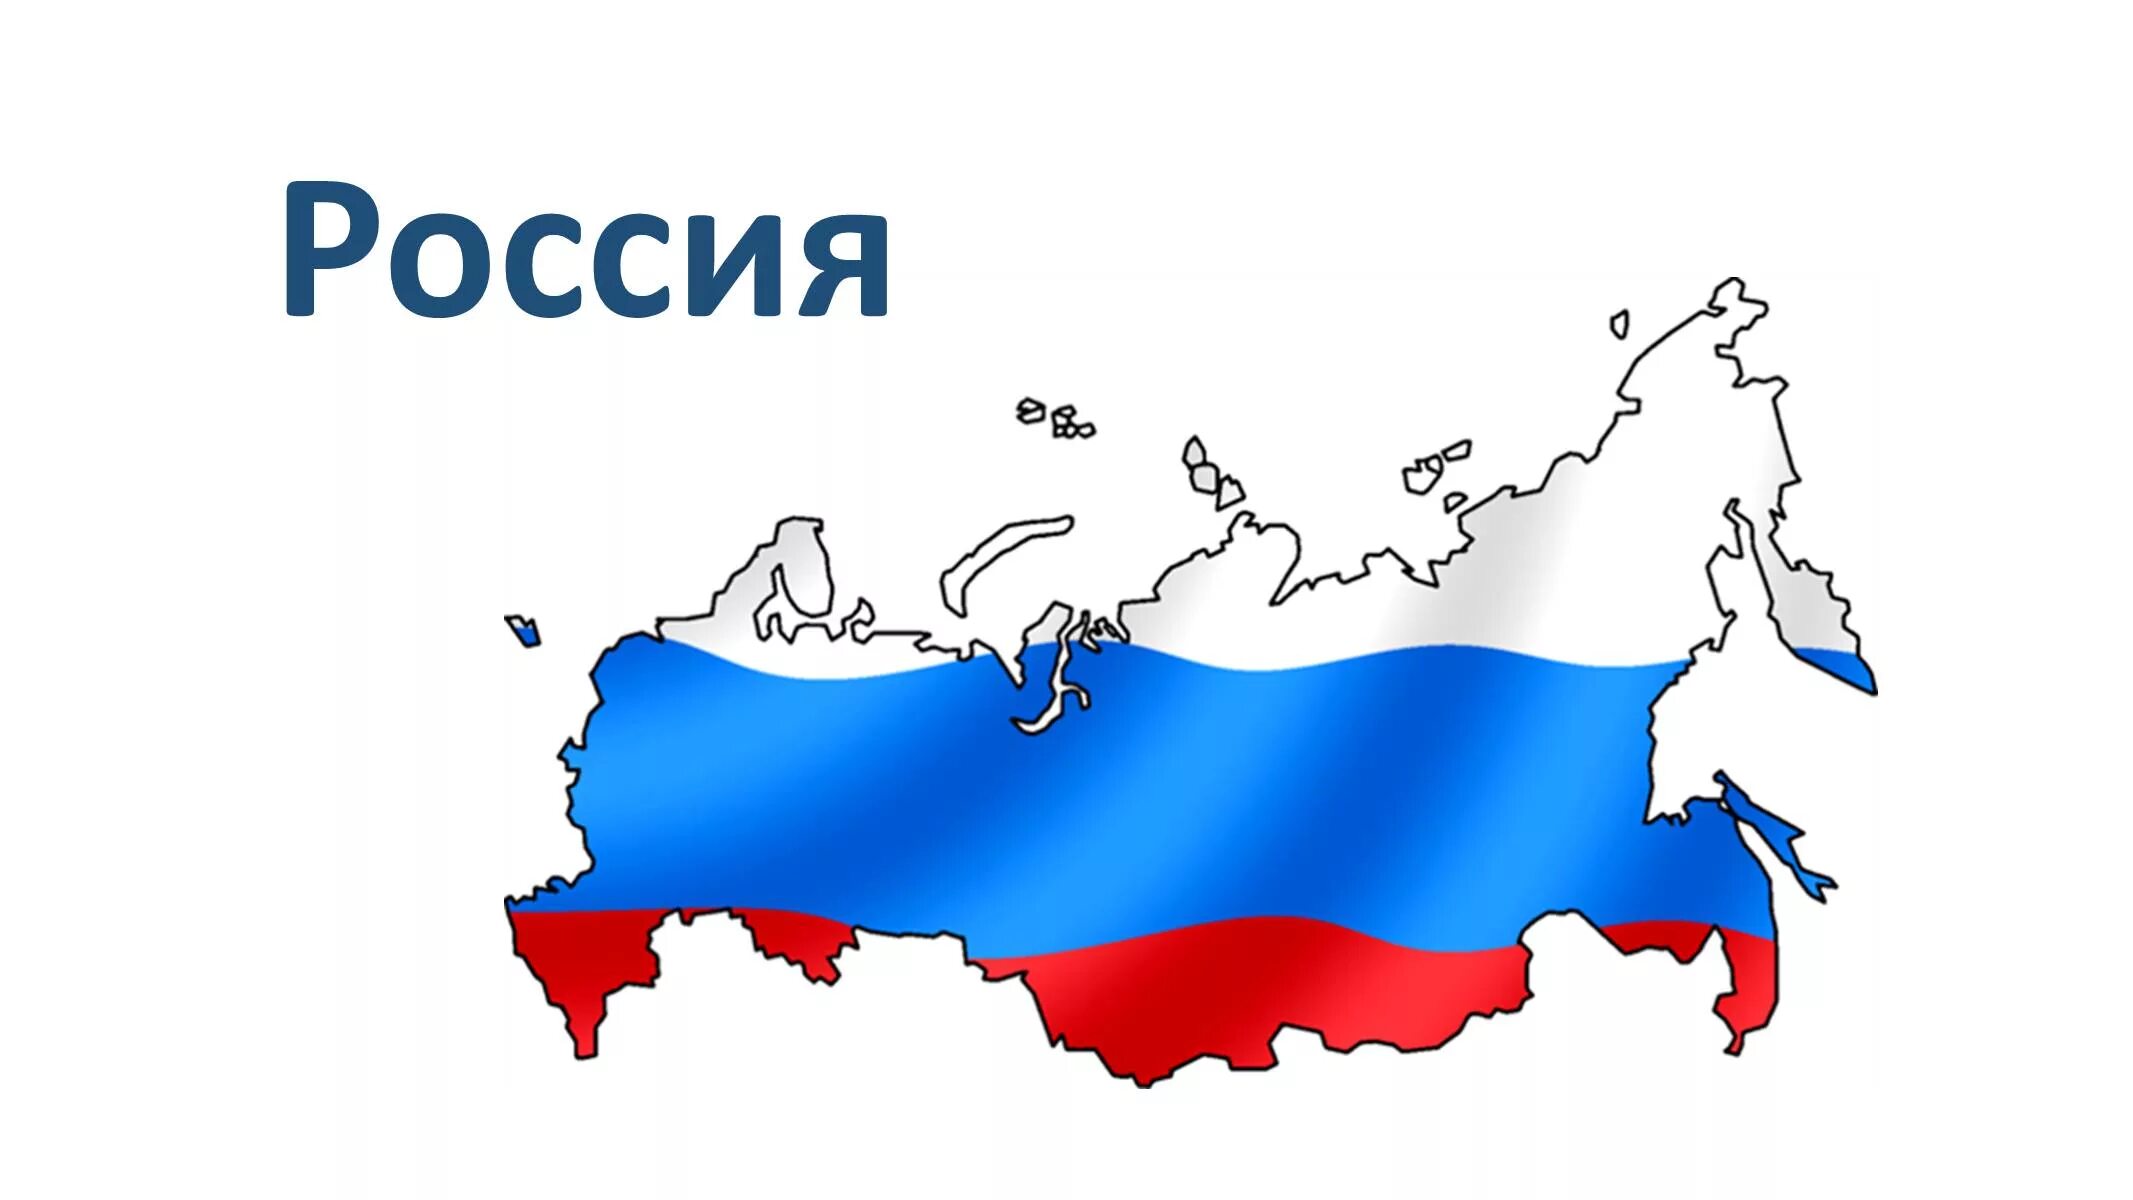 Я живу в стране россия. Местное самоуправление. Местное самоуправление в России. Изображение России. Россия большая Страна.